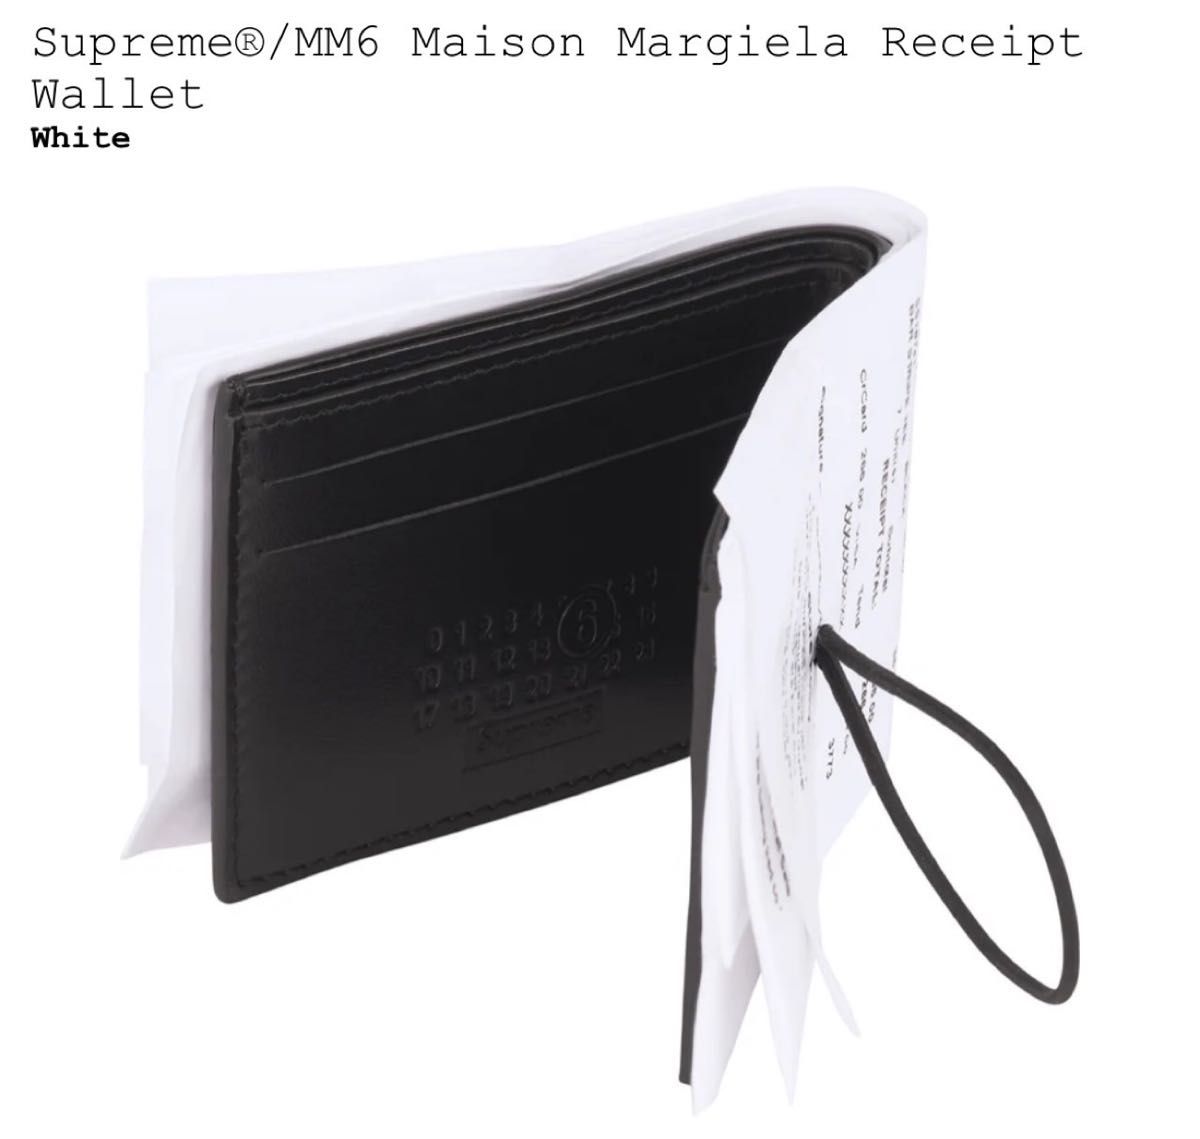 Supreme MM6 Maison Margiela Receipt Wallet 